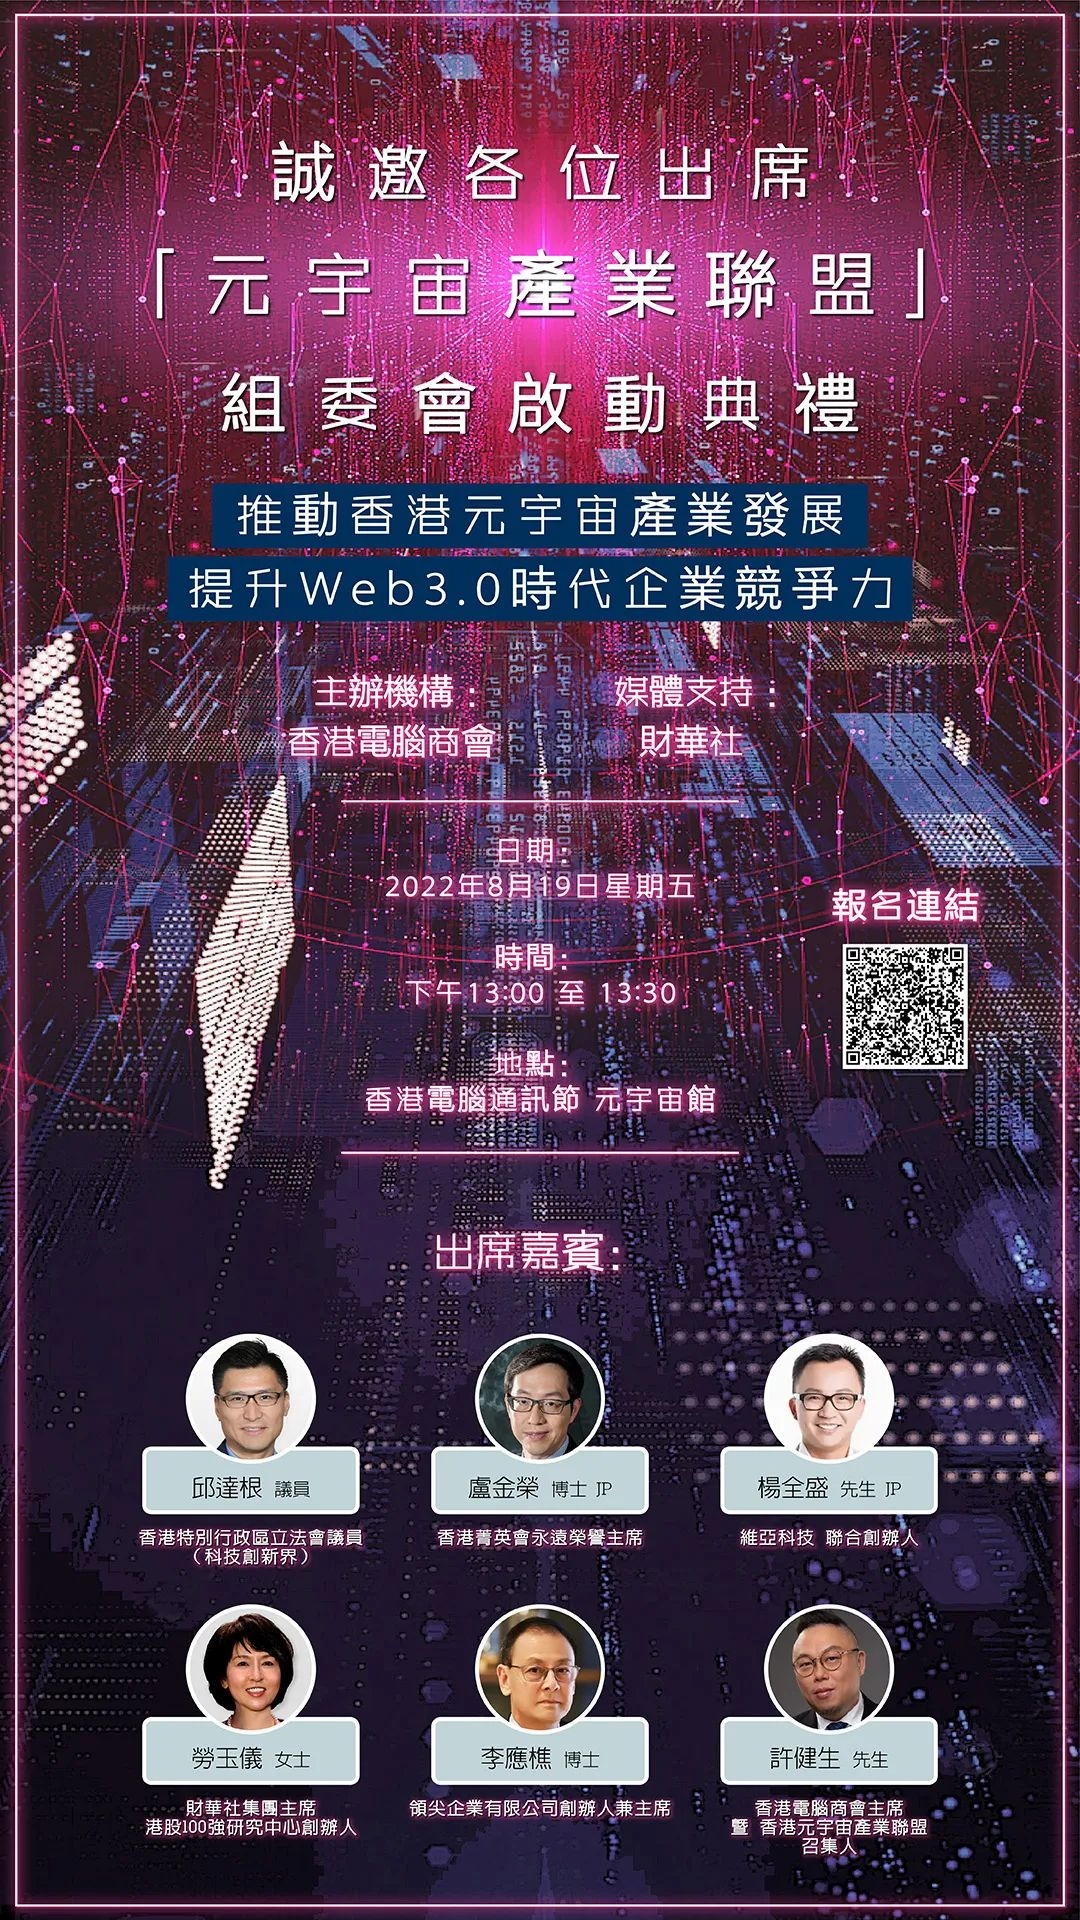 活动预告 | 香港元宇宙产业联盟组委会启动典礼 & Web3.0峰会